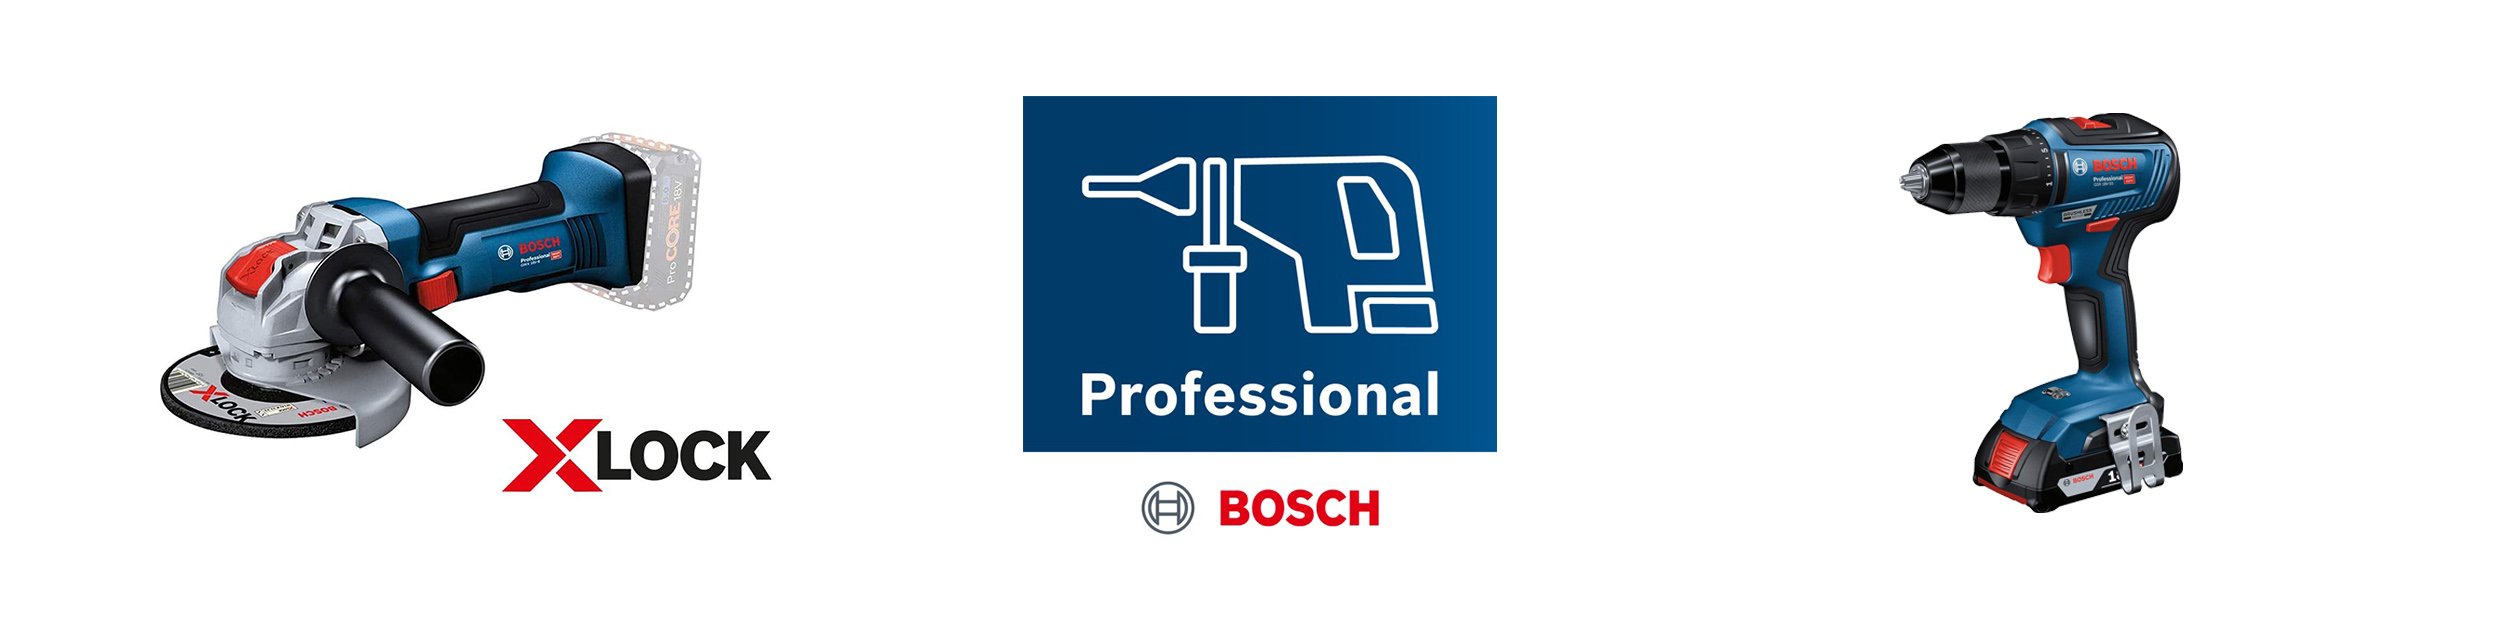 Elettroutensili a corrente Bosch: le offerte